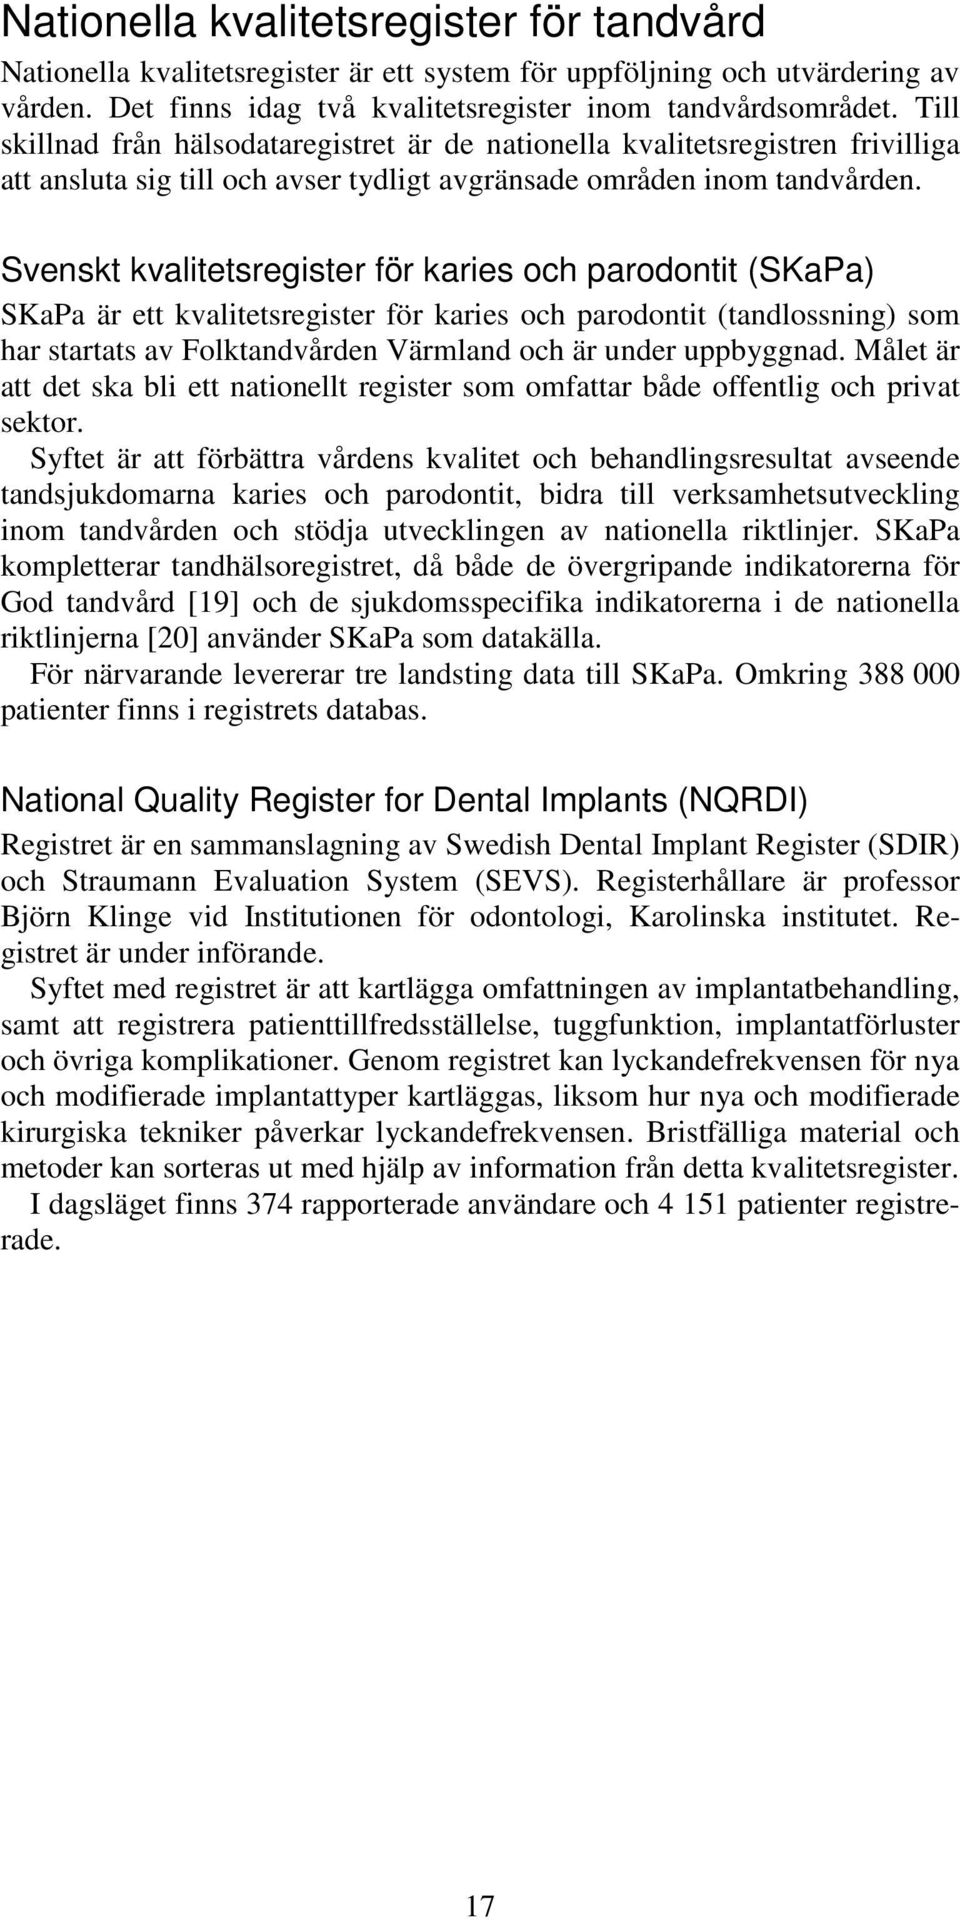 Svenskt kvalitetsregister för karies och parodontit (SKaPa) SKaPa är ett kvalitetsregister för karies och parodontit (tandlossning) som har startats av Folktandvården Värmland och är under uppbyggnad.